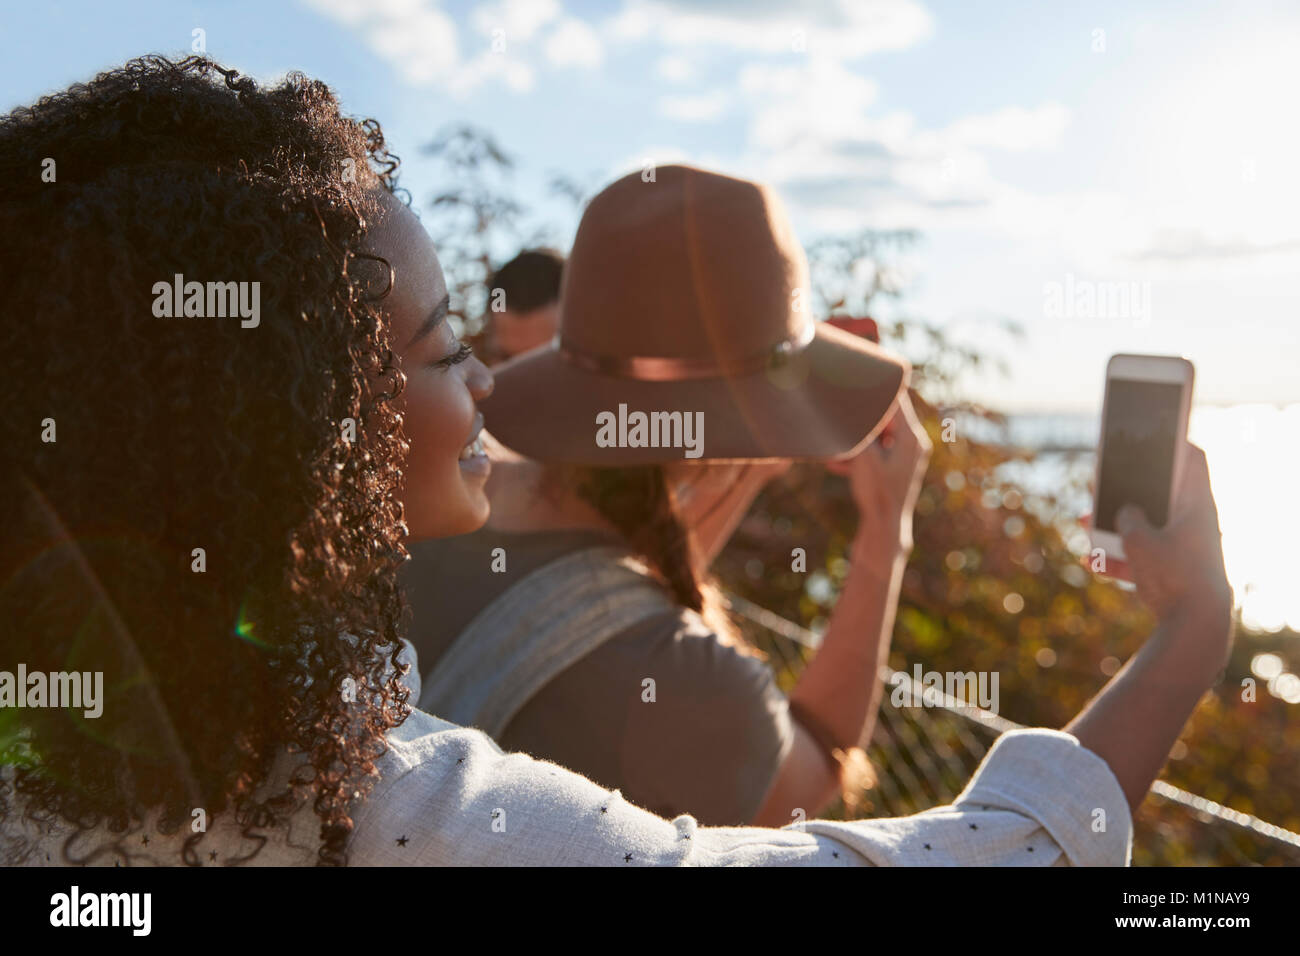 Gruppe von Touristen Fotografieren auf Handys Stockfoto